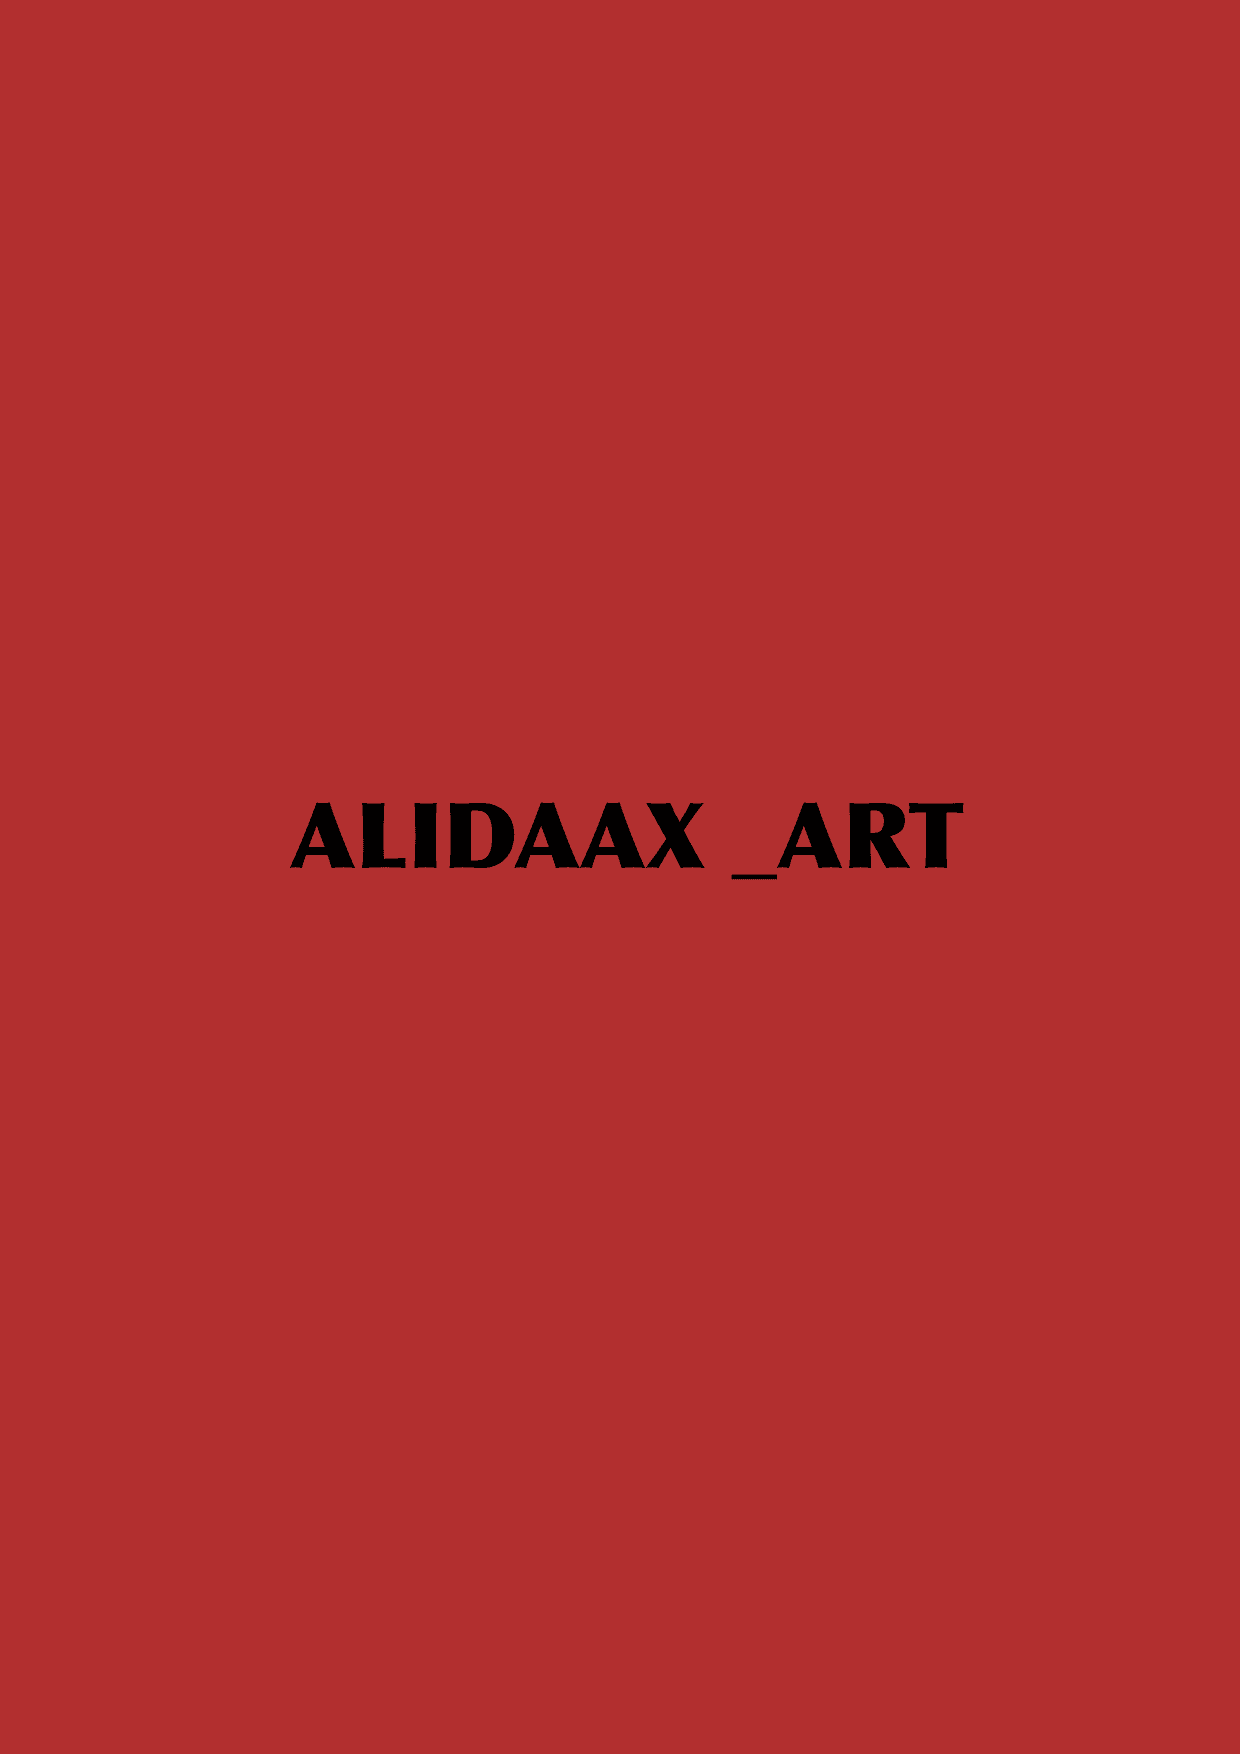 Alidaax_Art 橫幅